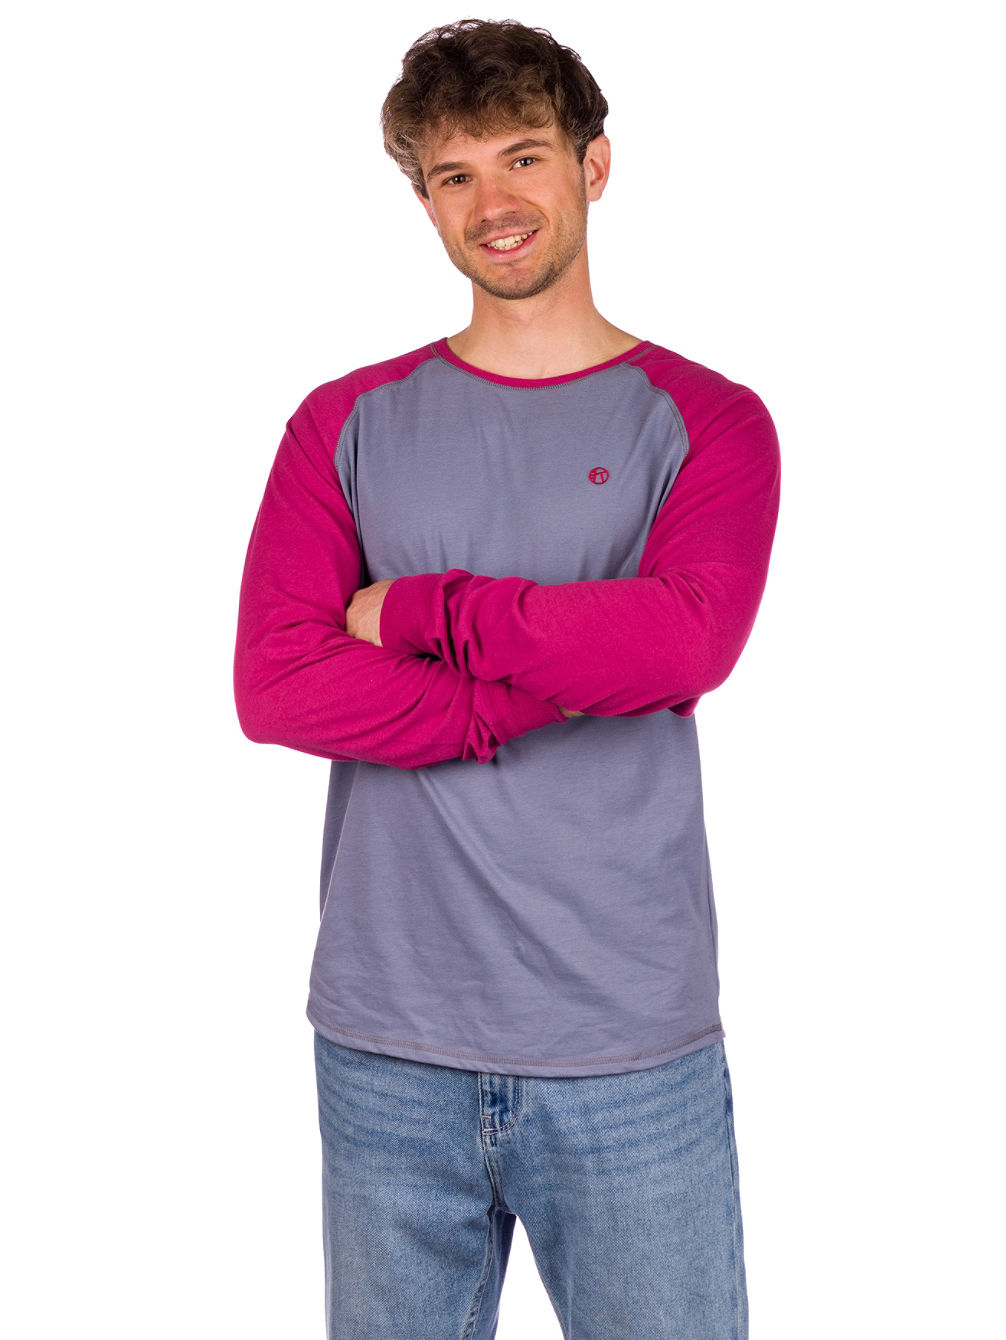 Brock T-Shirt